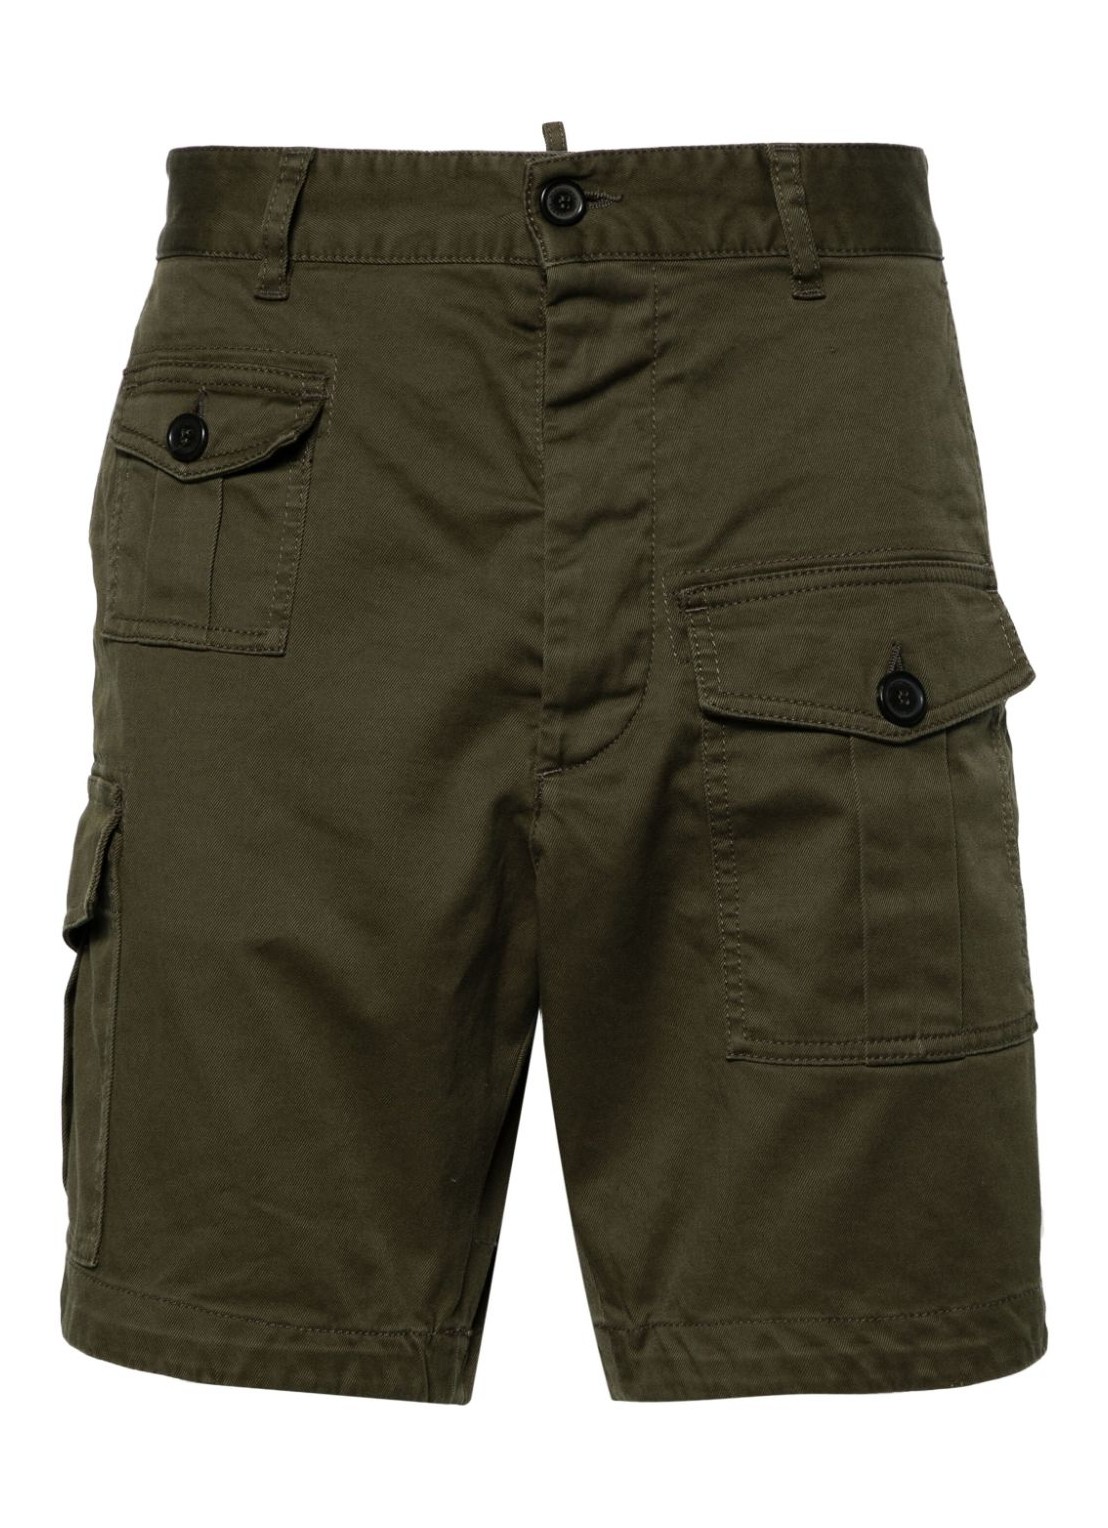 Pantalon corto dsquared sexy cargo shorts - s74mu0780s39021 695 talla 50
 